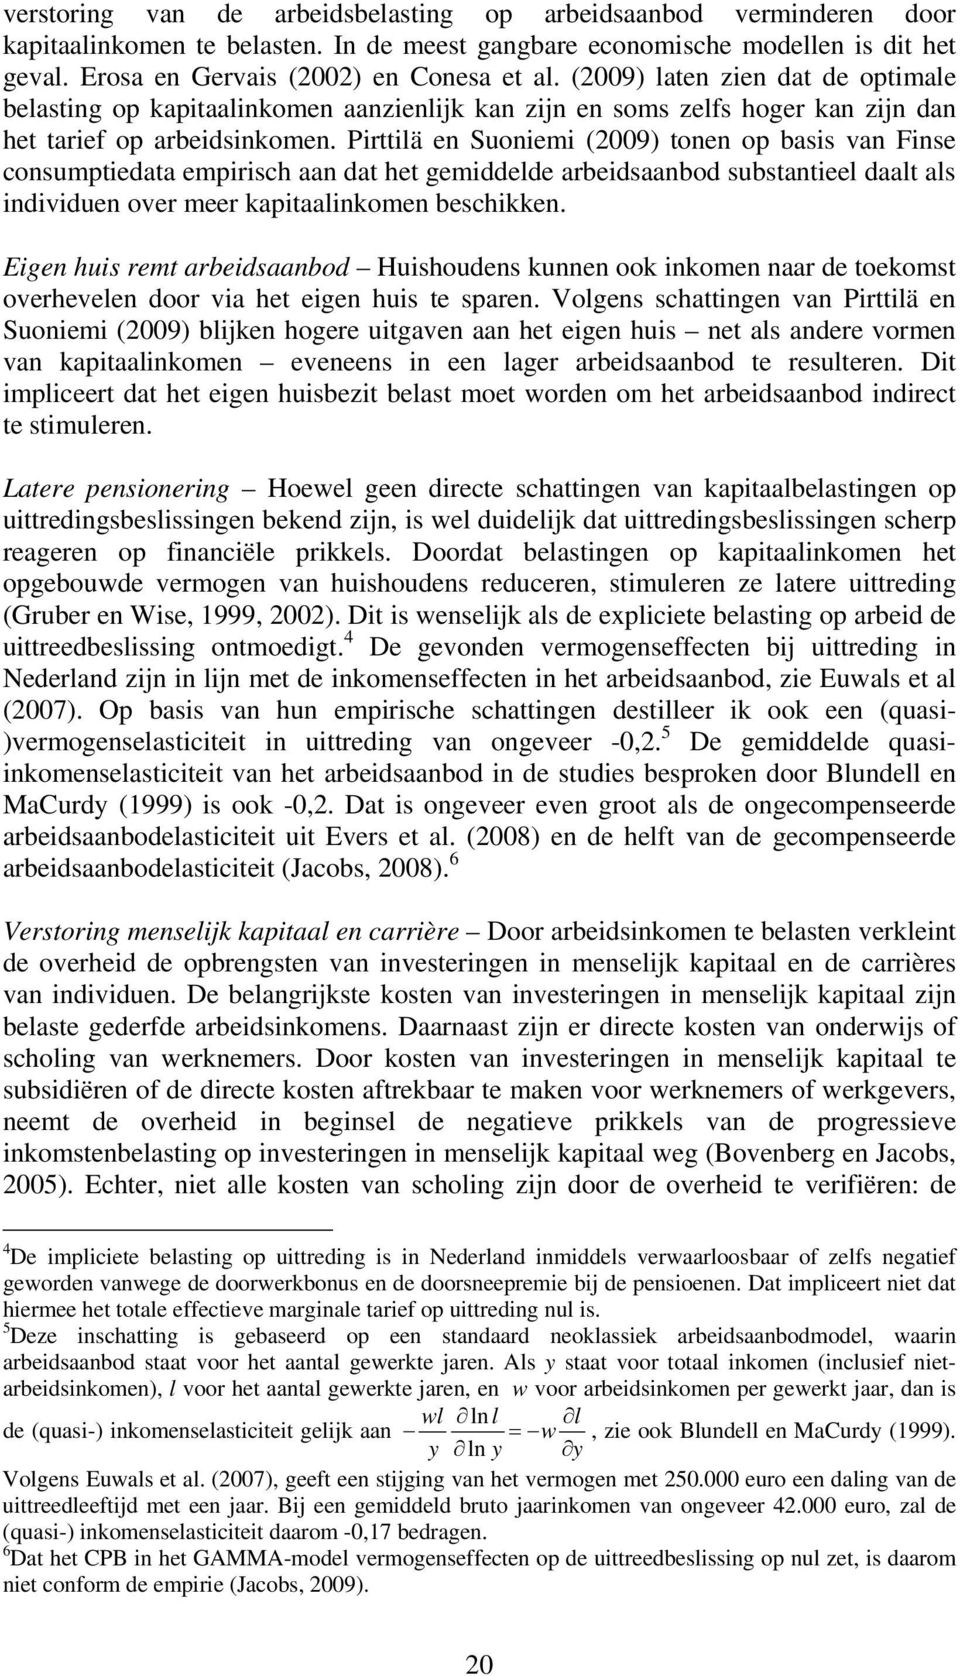 Pirttilä en Suoniemi (2009) tonen op basis van Finse consumptiedata empirisch aan dat het gemiddelde arbeidsaanbod substantieel daalt als individuen over meer kapitaalinkomen beschikken.